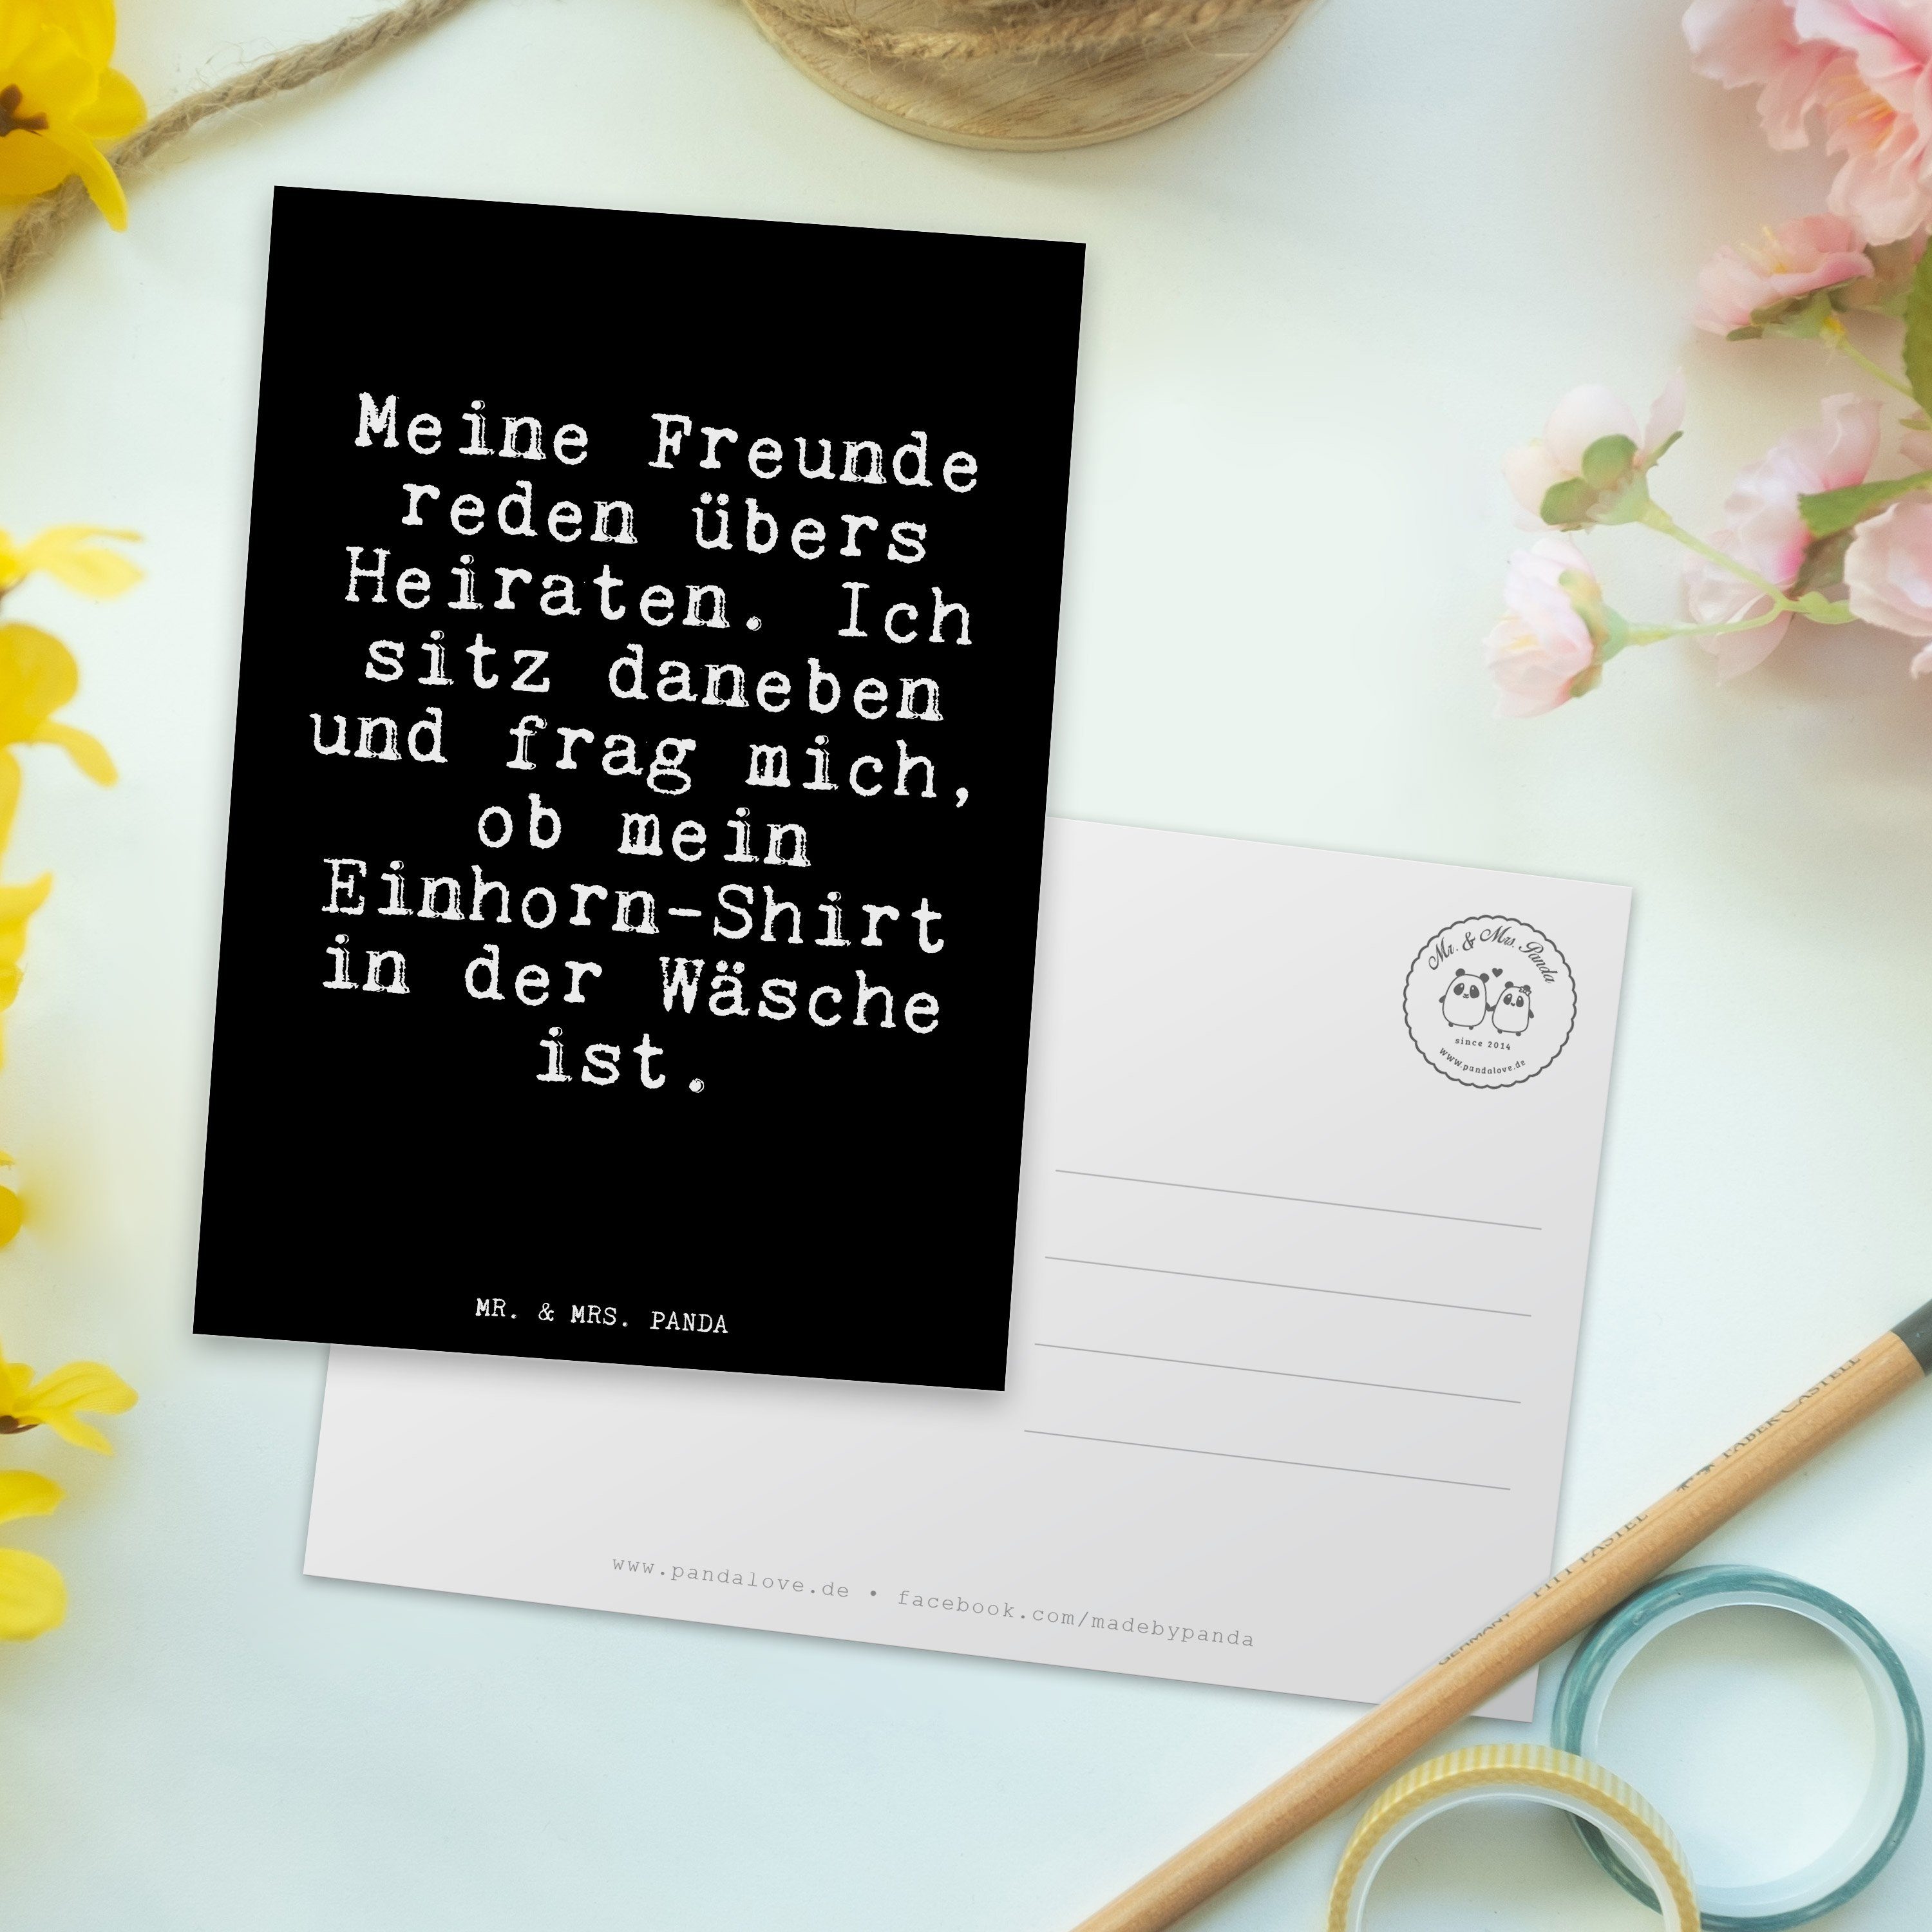 Mr. & Mrs. Panda Spruch, - G Meine Postkarte - Unicorn, Freunde Schwarz Geschenk, reden übers